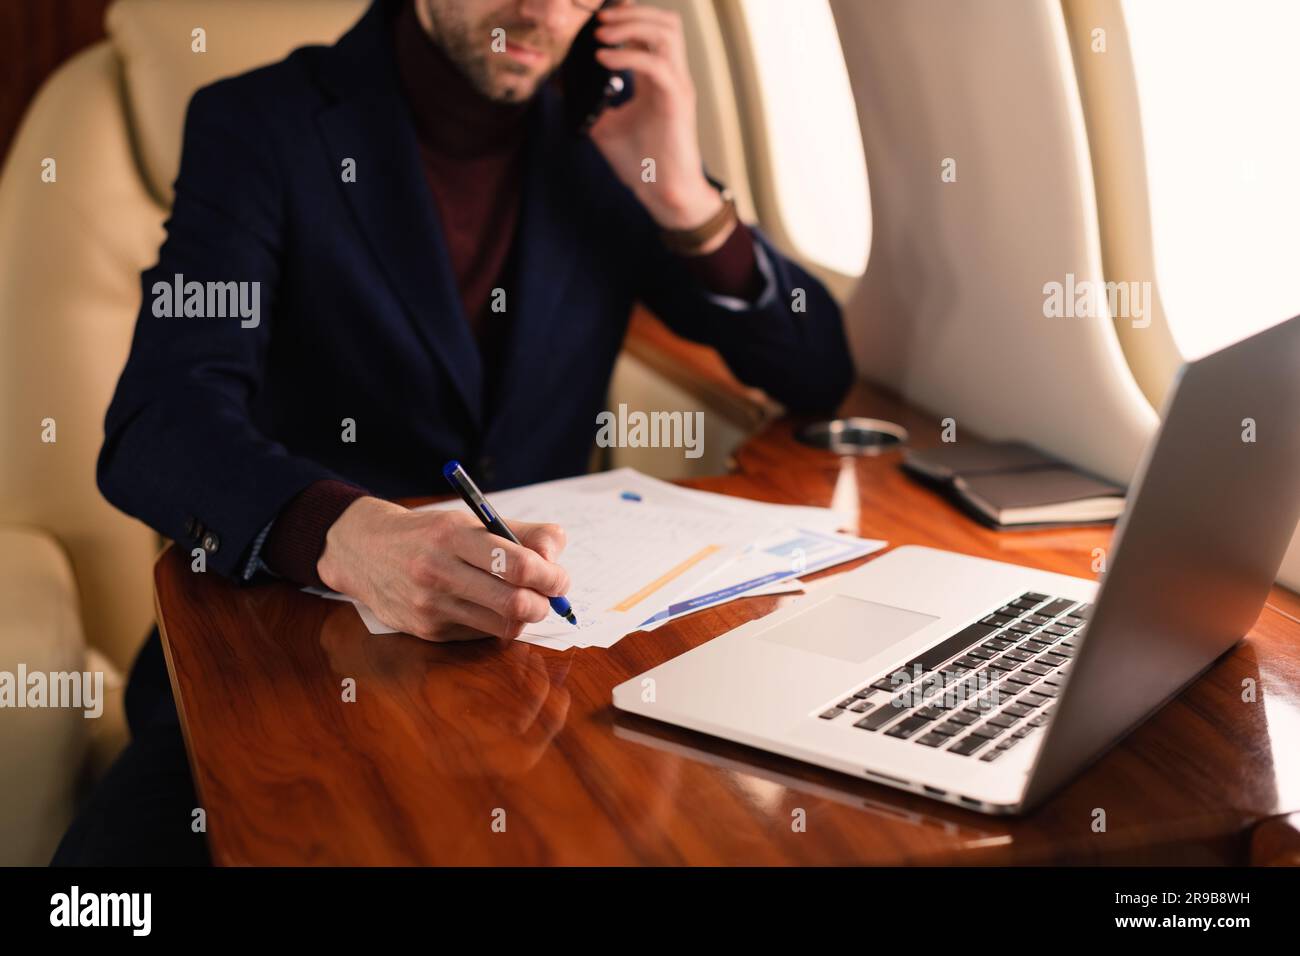 Jeune homme d'affaires élégant PDG dans des lunettes assis à l'intérieur d'un avion à jet privé et travaillant dans des documents de monnaie papier et ordinateur portable pendant le vol Banque D'Images